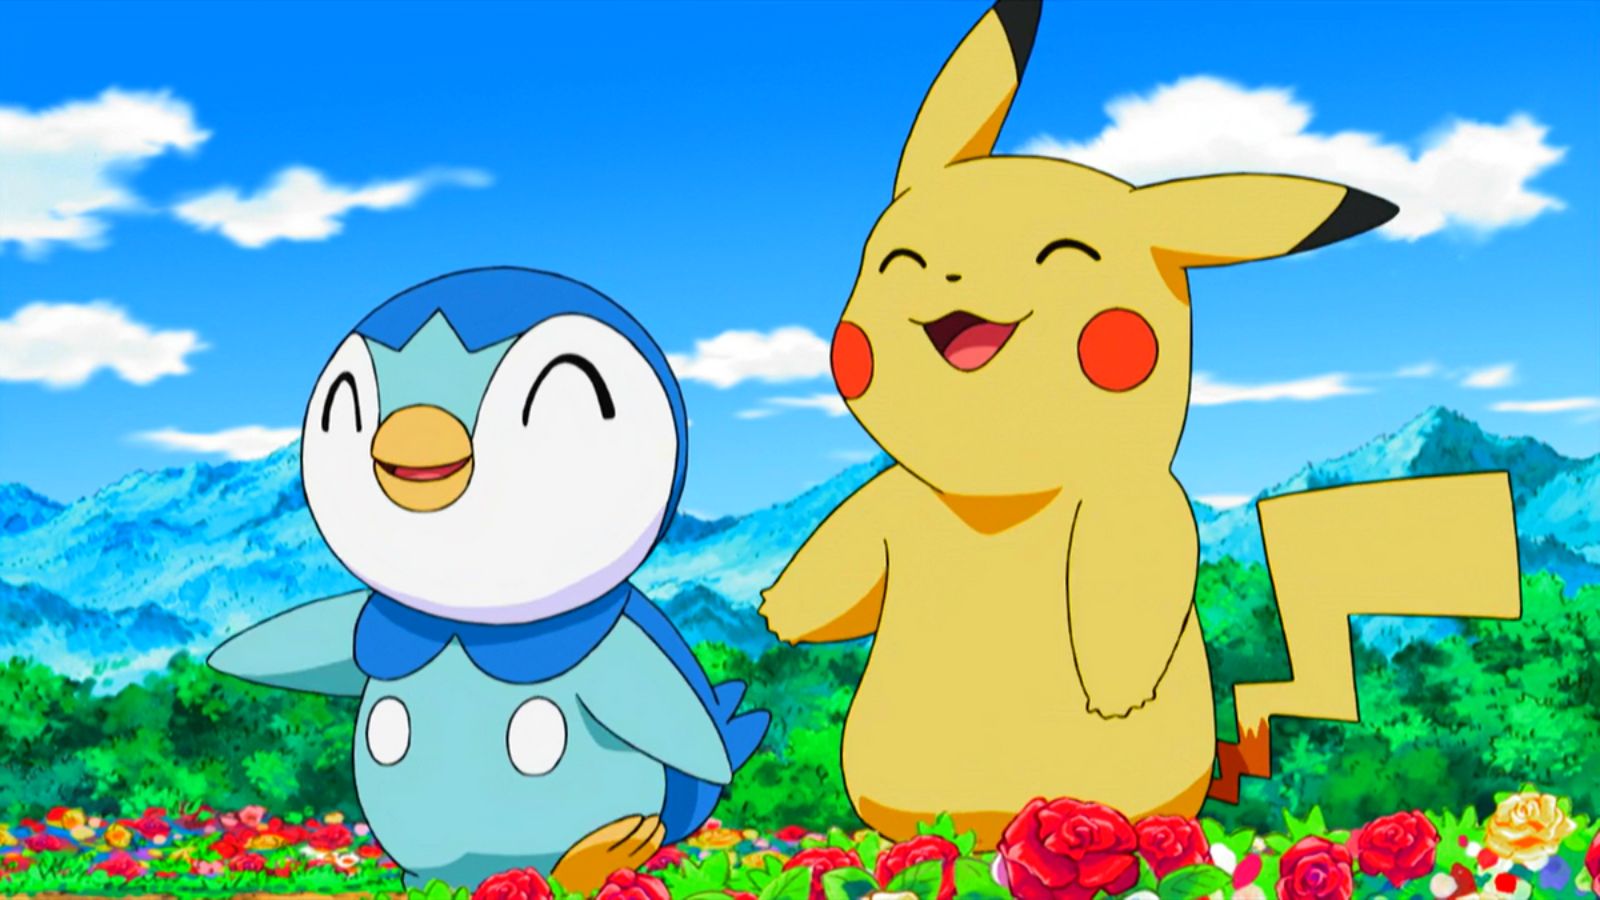 Die Riesen-Pikachu- und Piplup-Pokémon-Squishmallows sind bei Amazon erhältlich